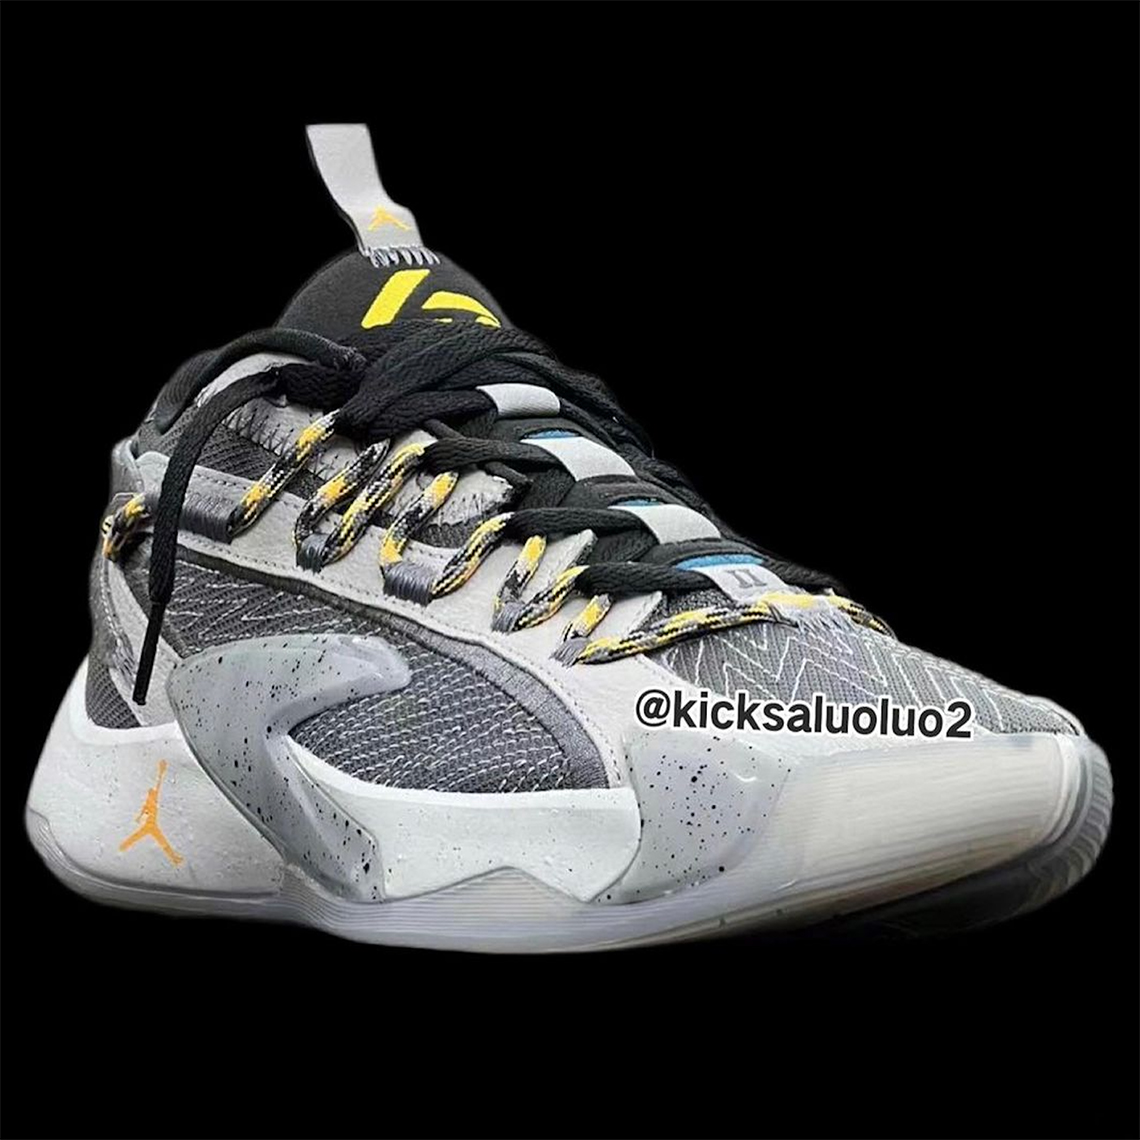 Get Shoes Air Jordan 6 UNC CT8529-410 Grey Yellow Black 3